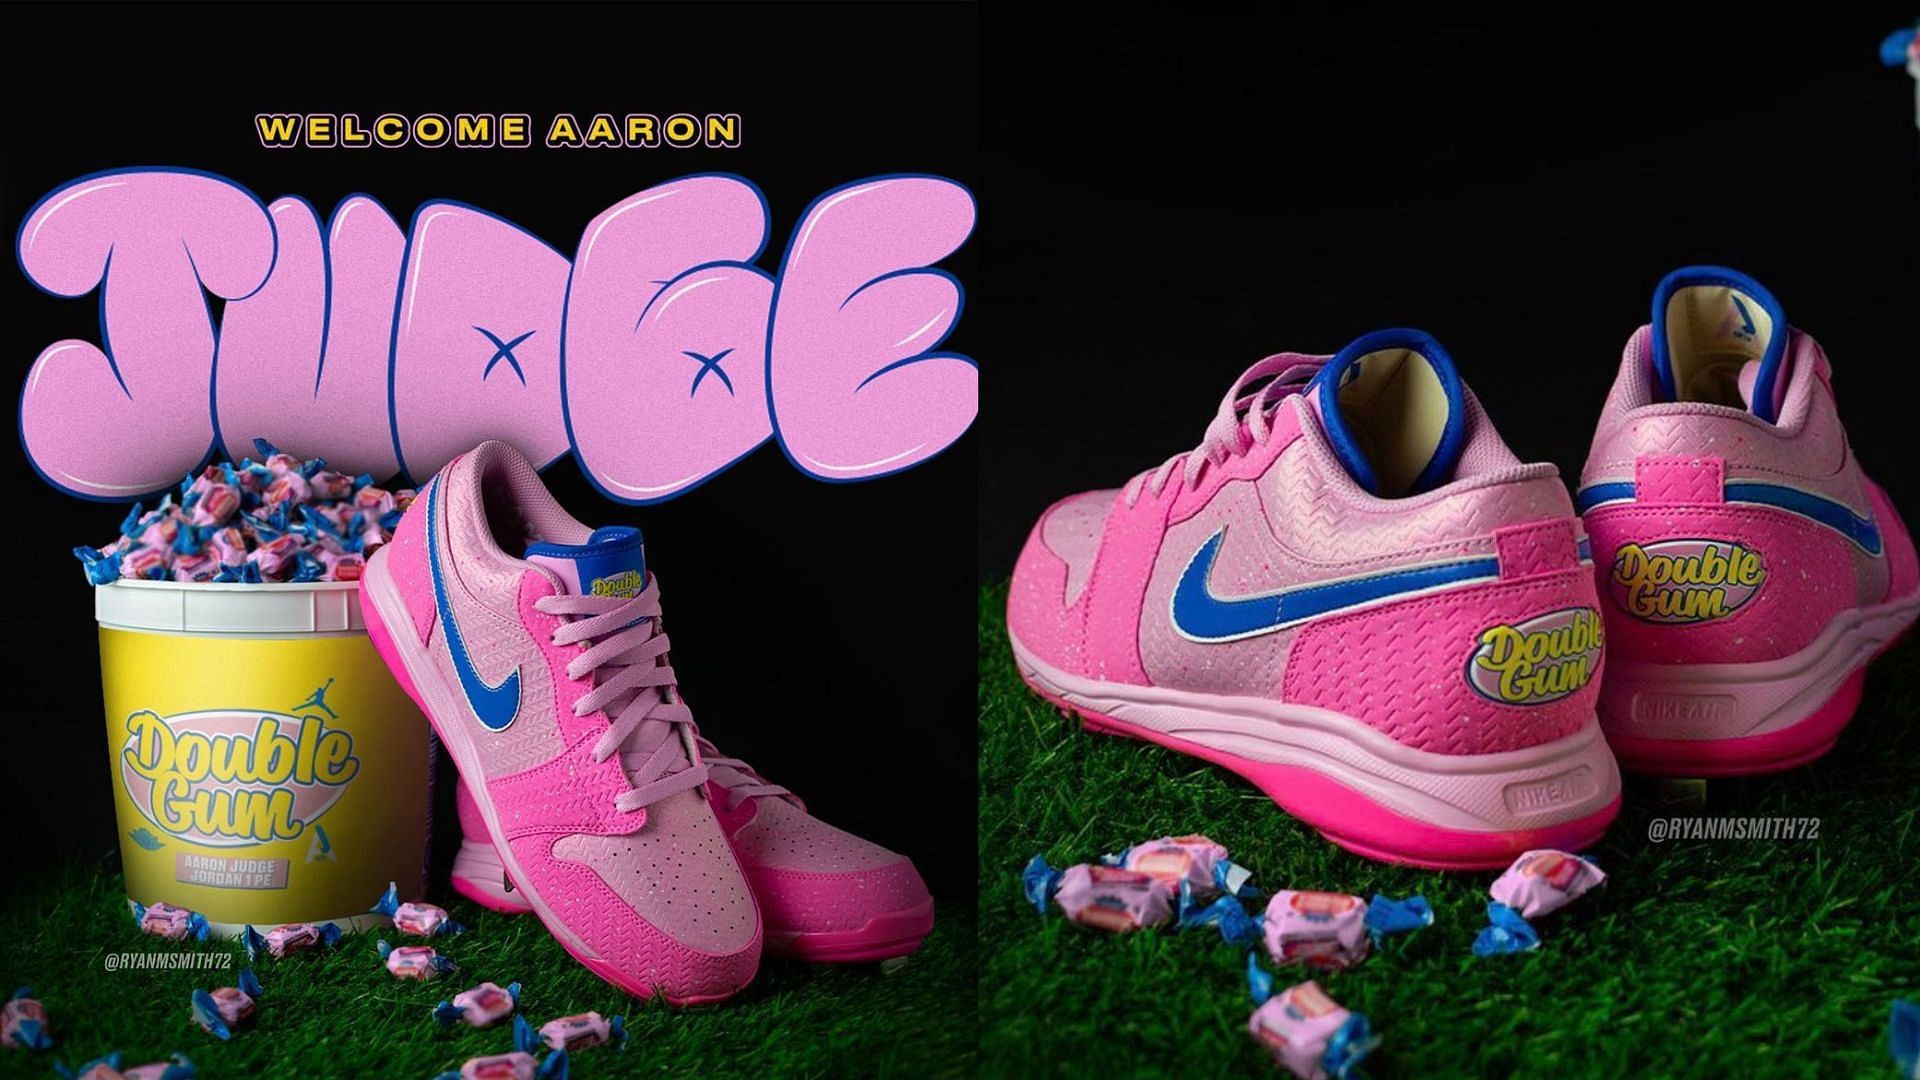 Air Jordan 1: Aaron Judge x Air Jordan 1 Low Double Gum PE shoes